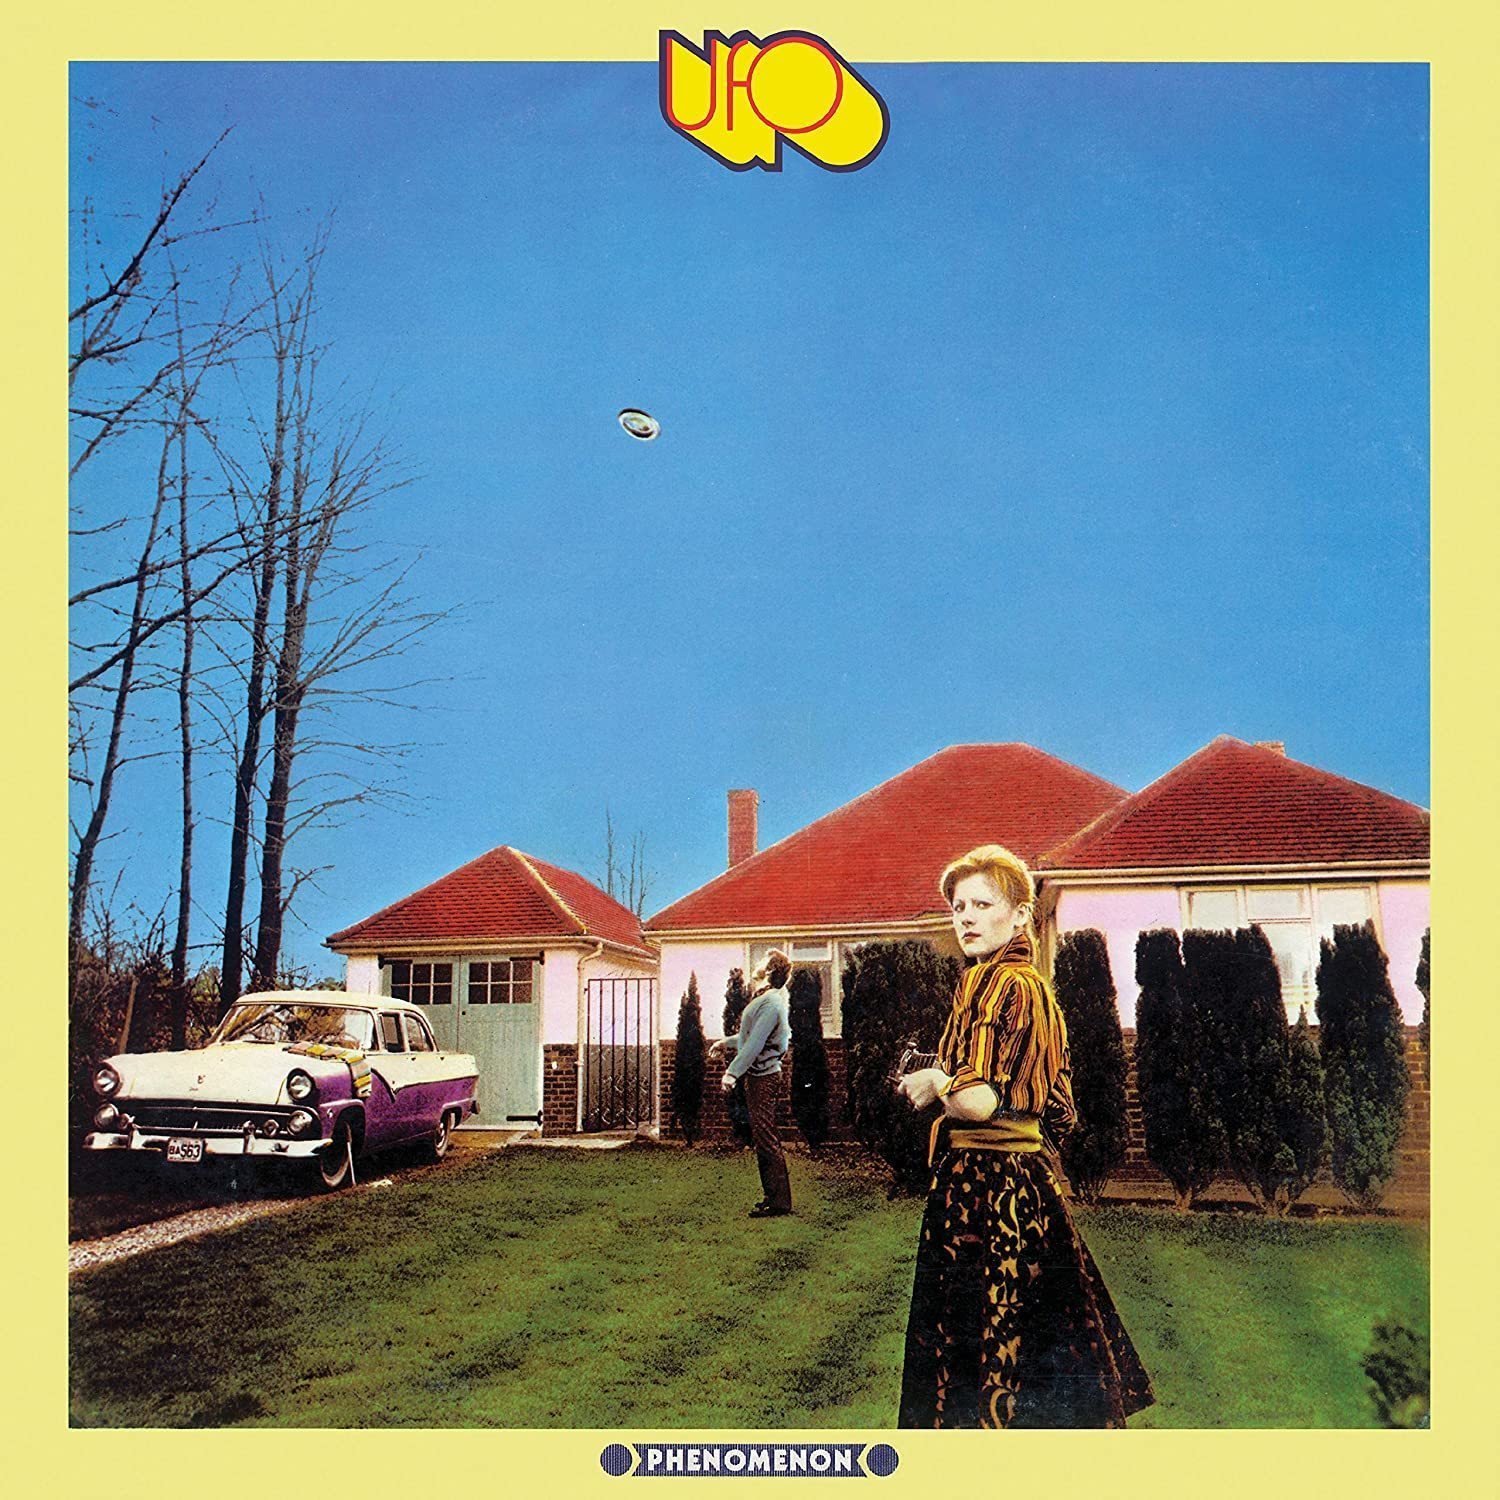 Vinyl Record UFO - Phenomenon (Deluxe Edition) (LP)